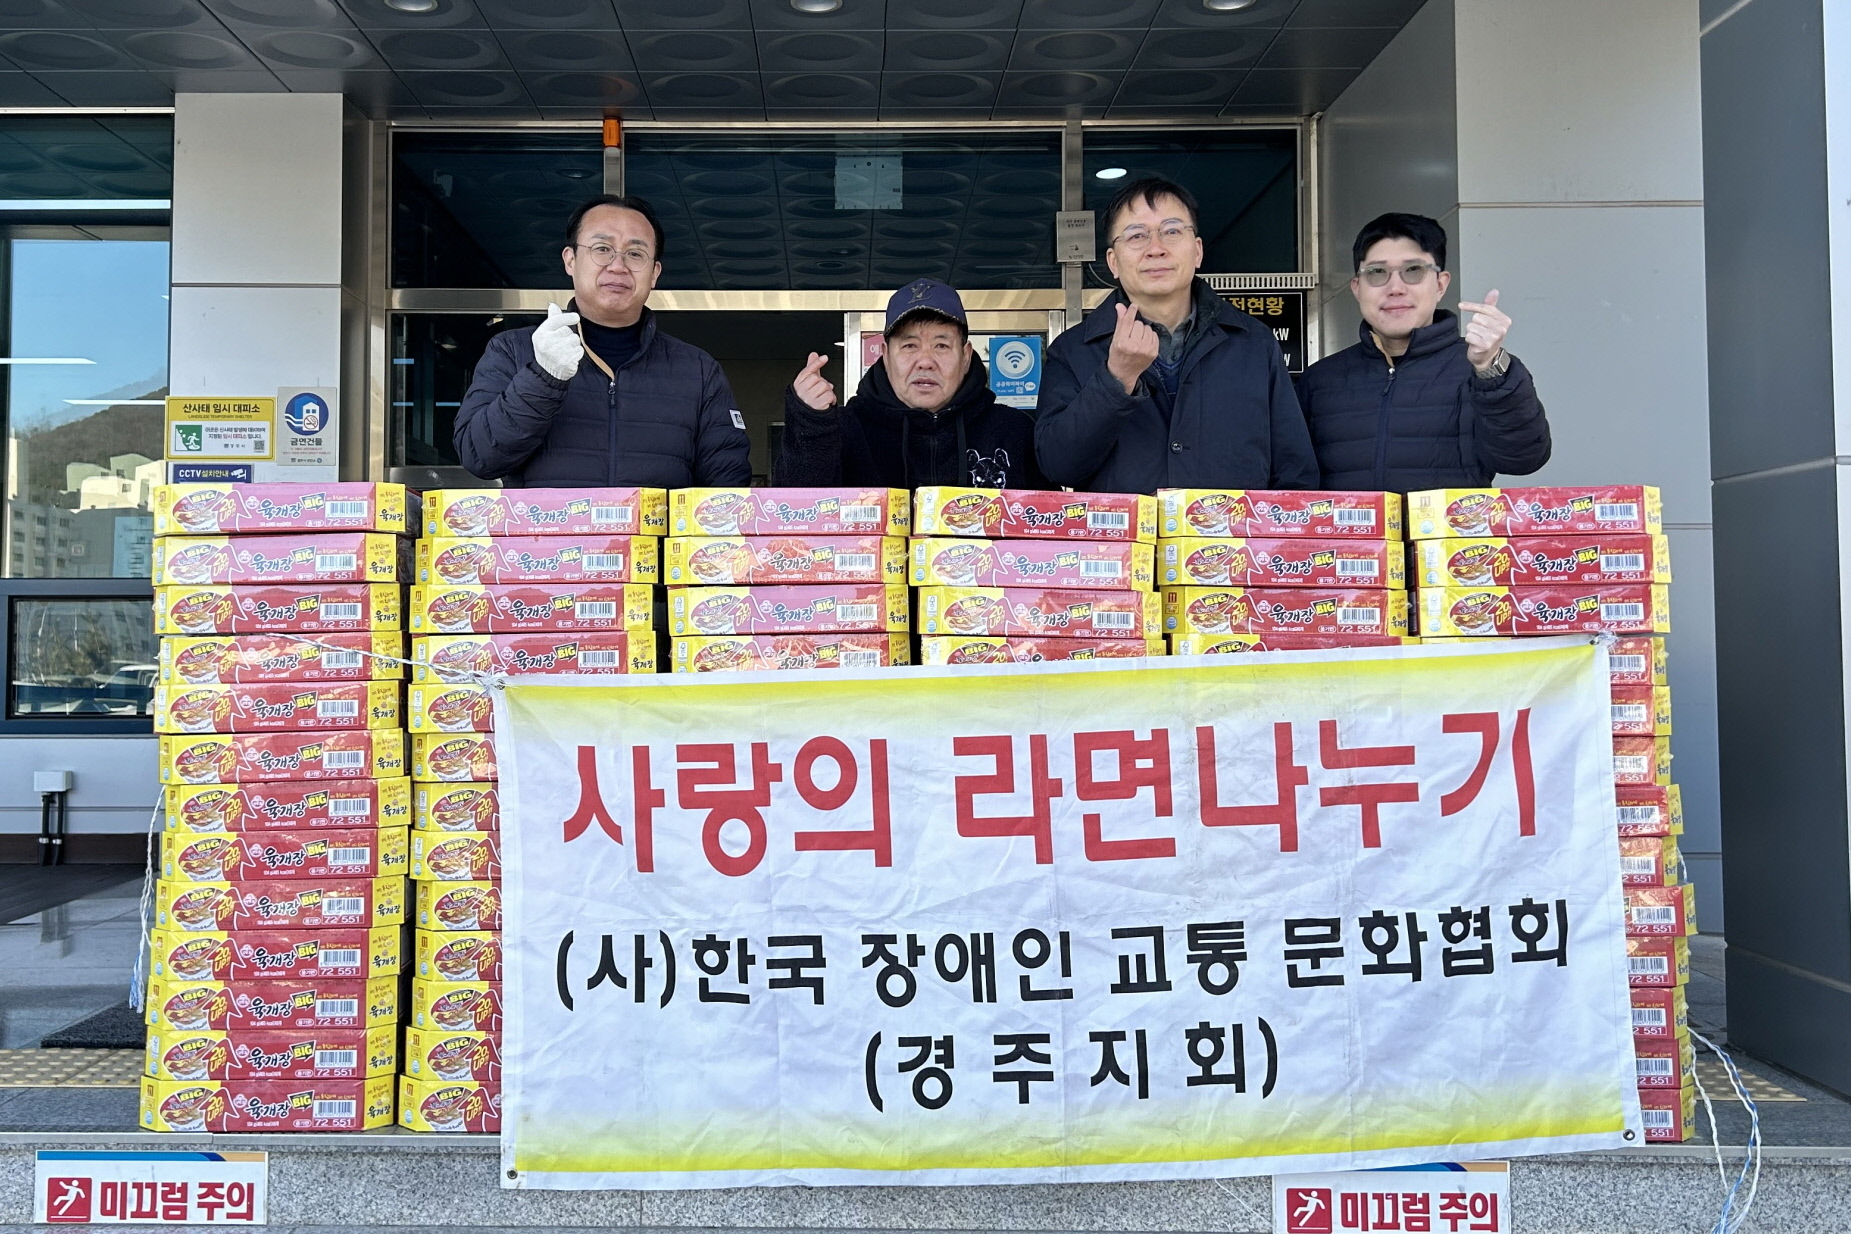 지난 25일 (사)한국장애인교통문화협회에서 선도동 지역 내 취약계층을 위해 컵라면 80박스를 기부했다.